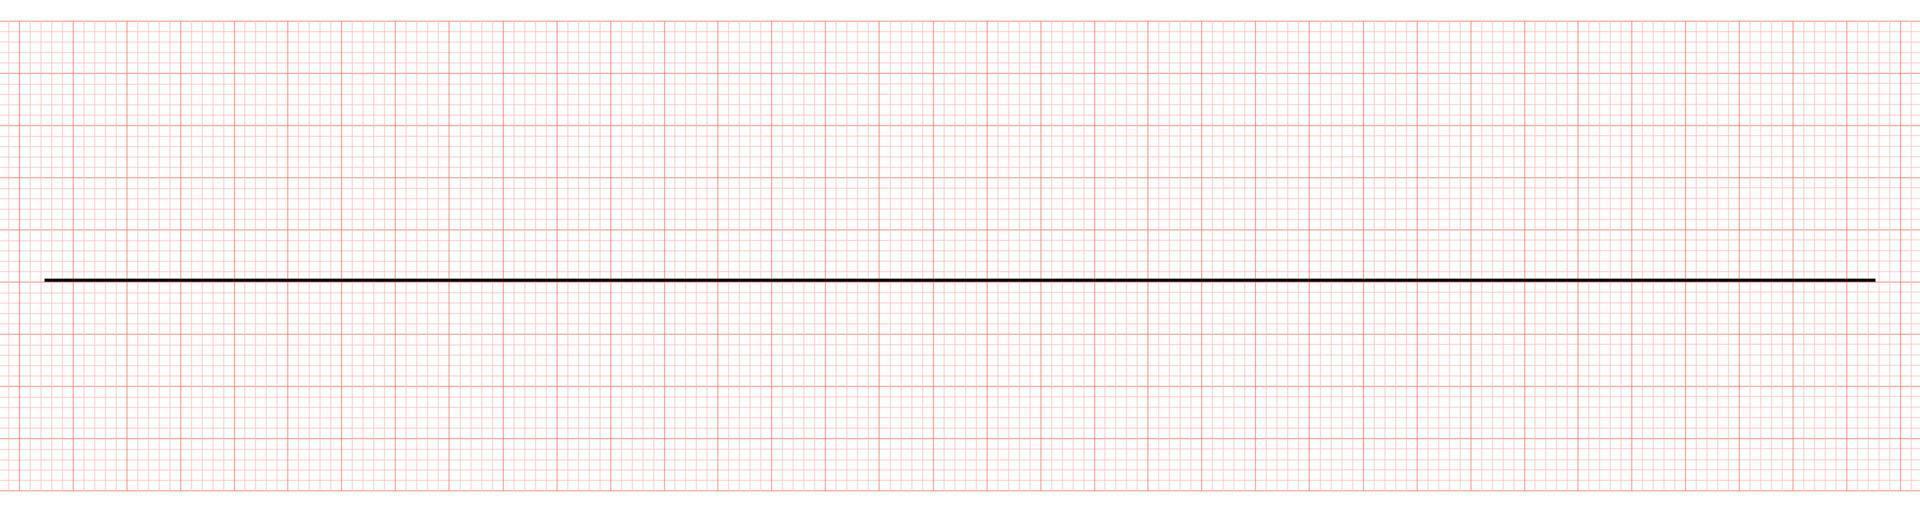 electrocardiograma que muestra una línea plana o asistolia vector